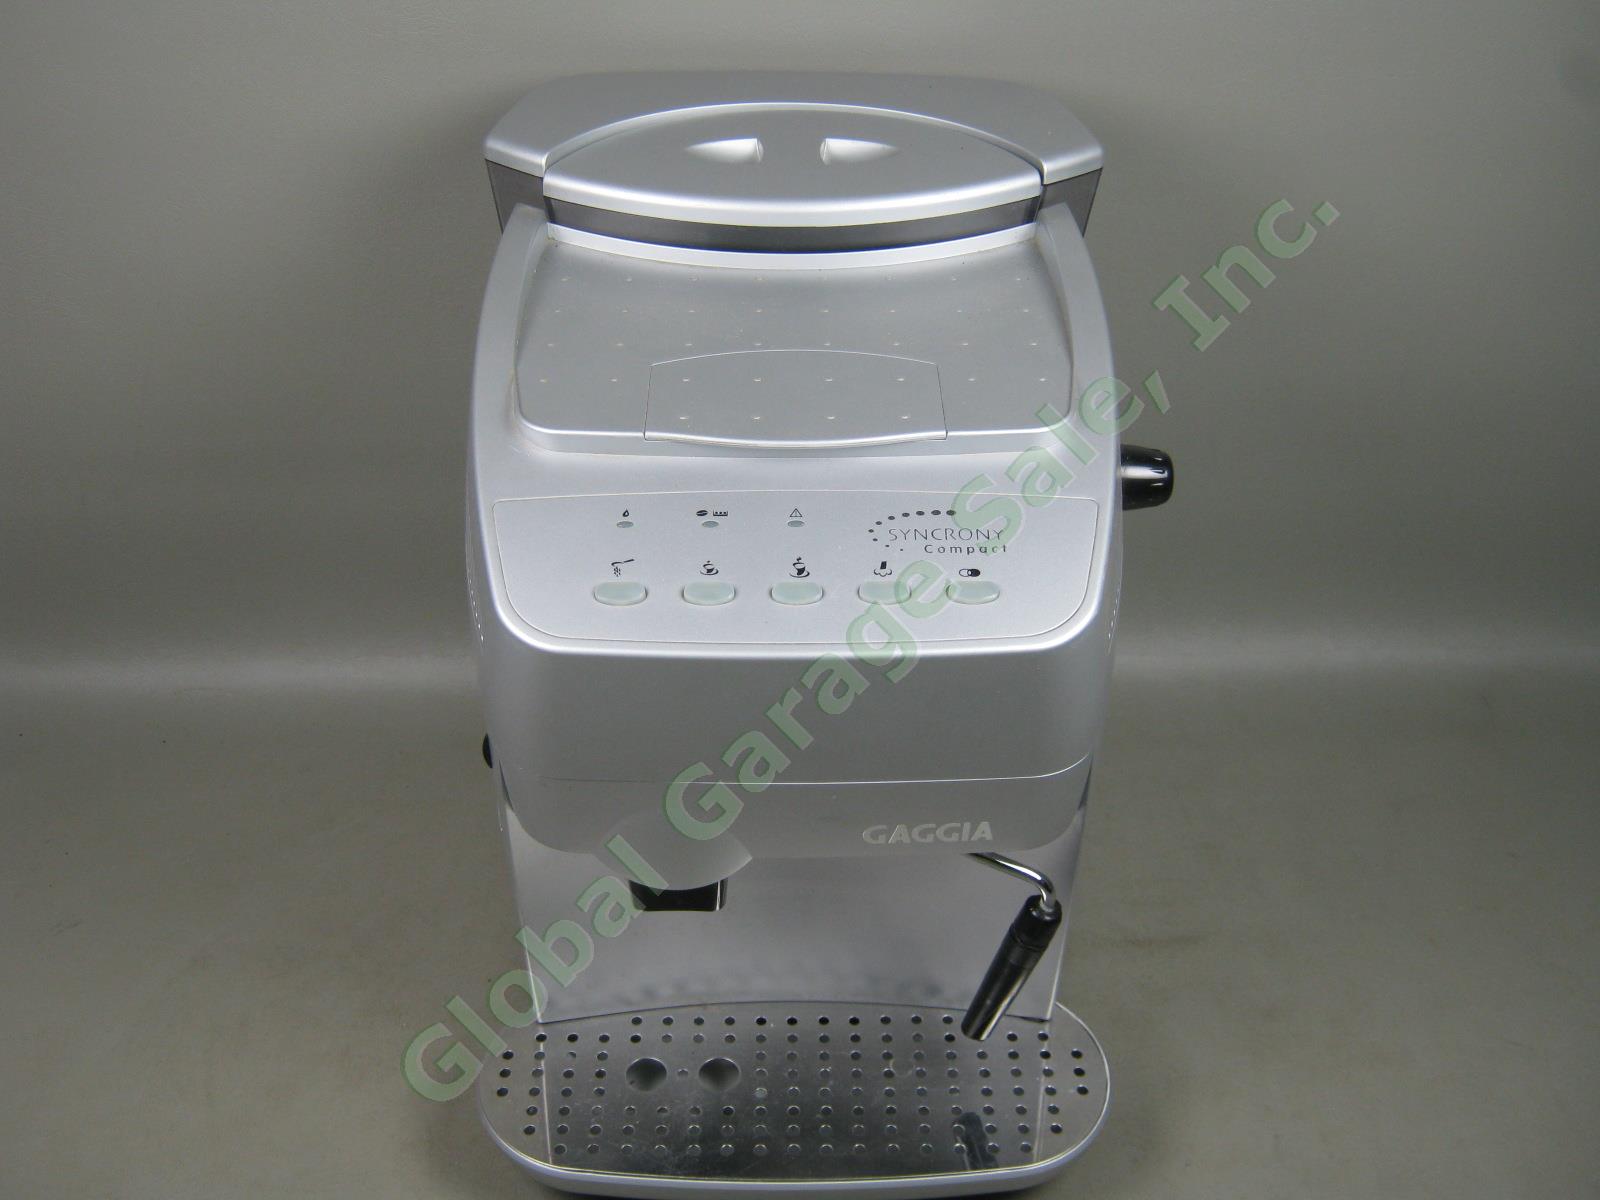 Gaggia Syncrony Compact Digital Espresso Coffee Cappuccino Maker Machine +Manual 1